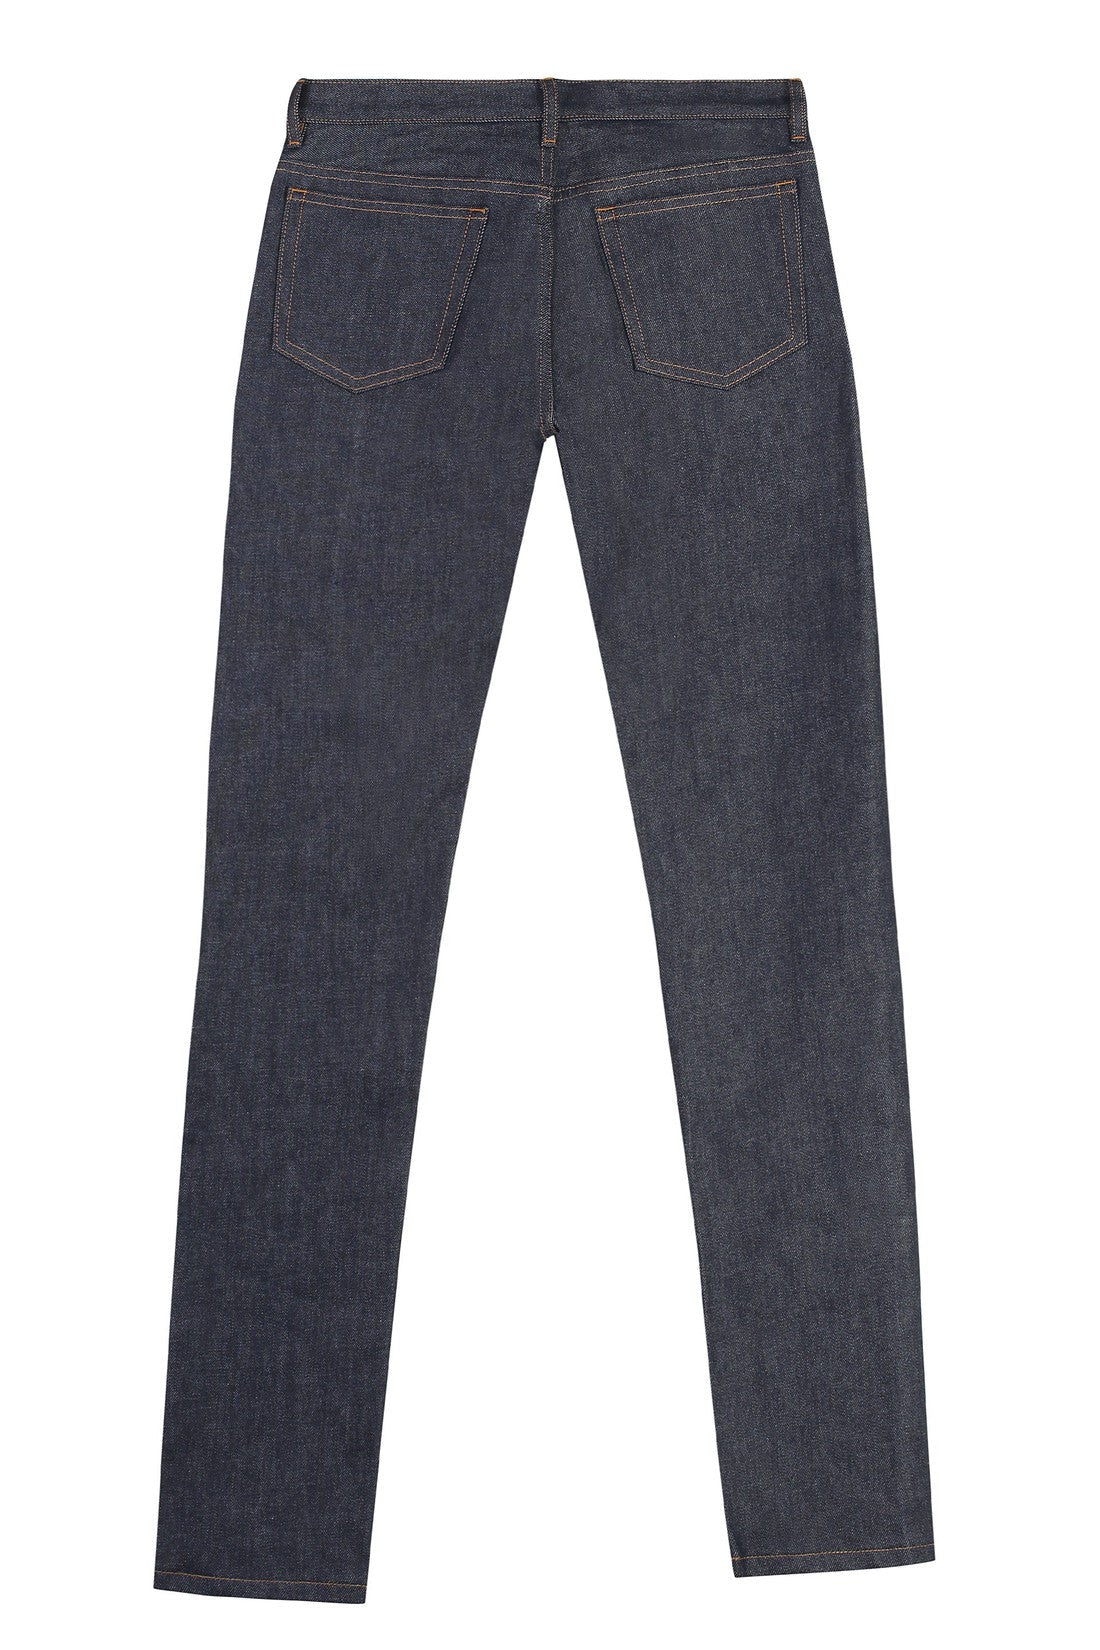 A.P.C.-OUTLET-SALE-slim fit jeans-ARCHIVIST